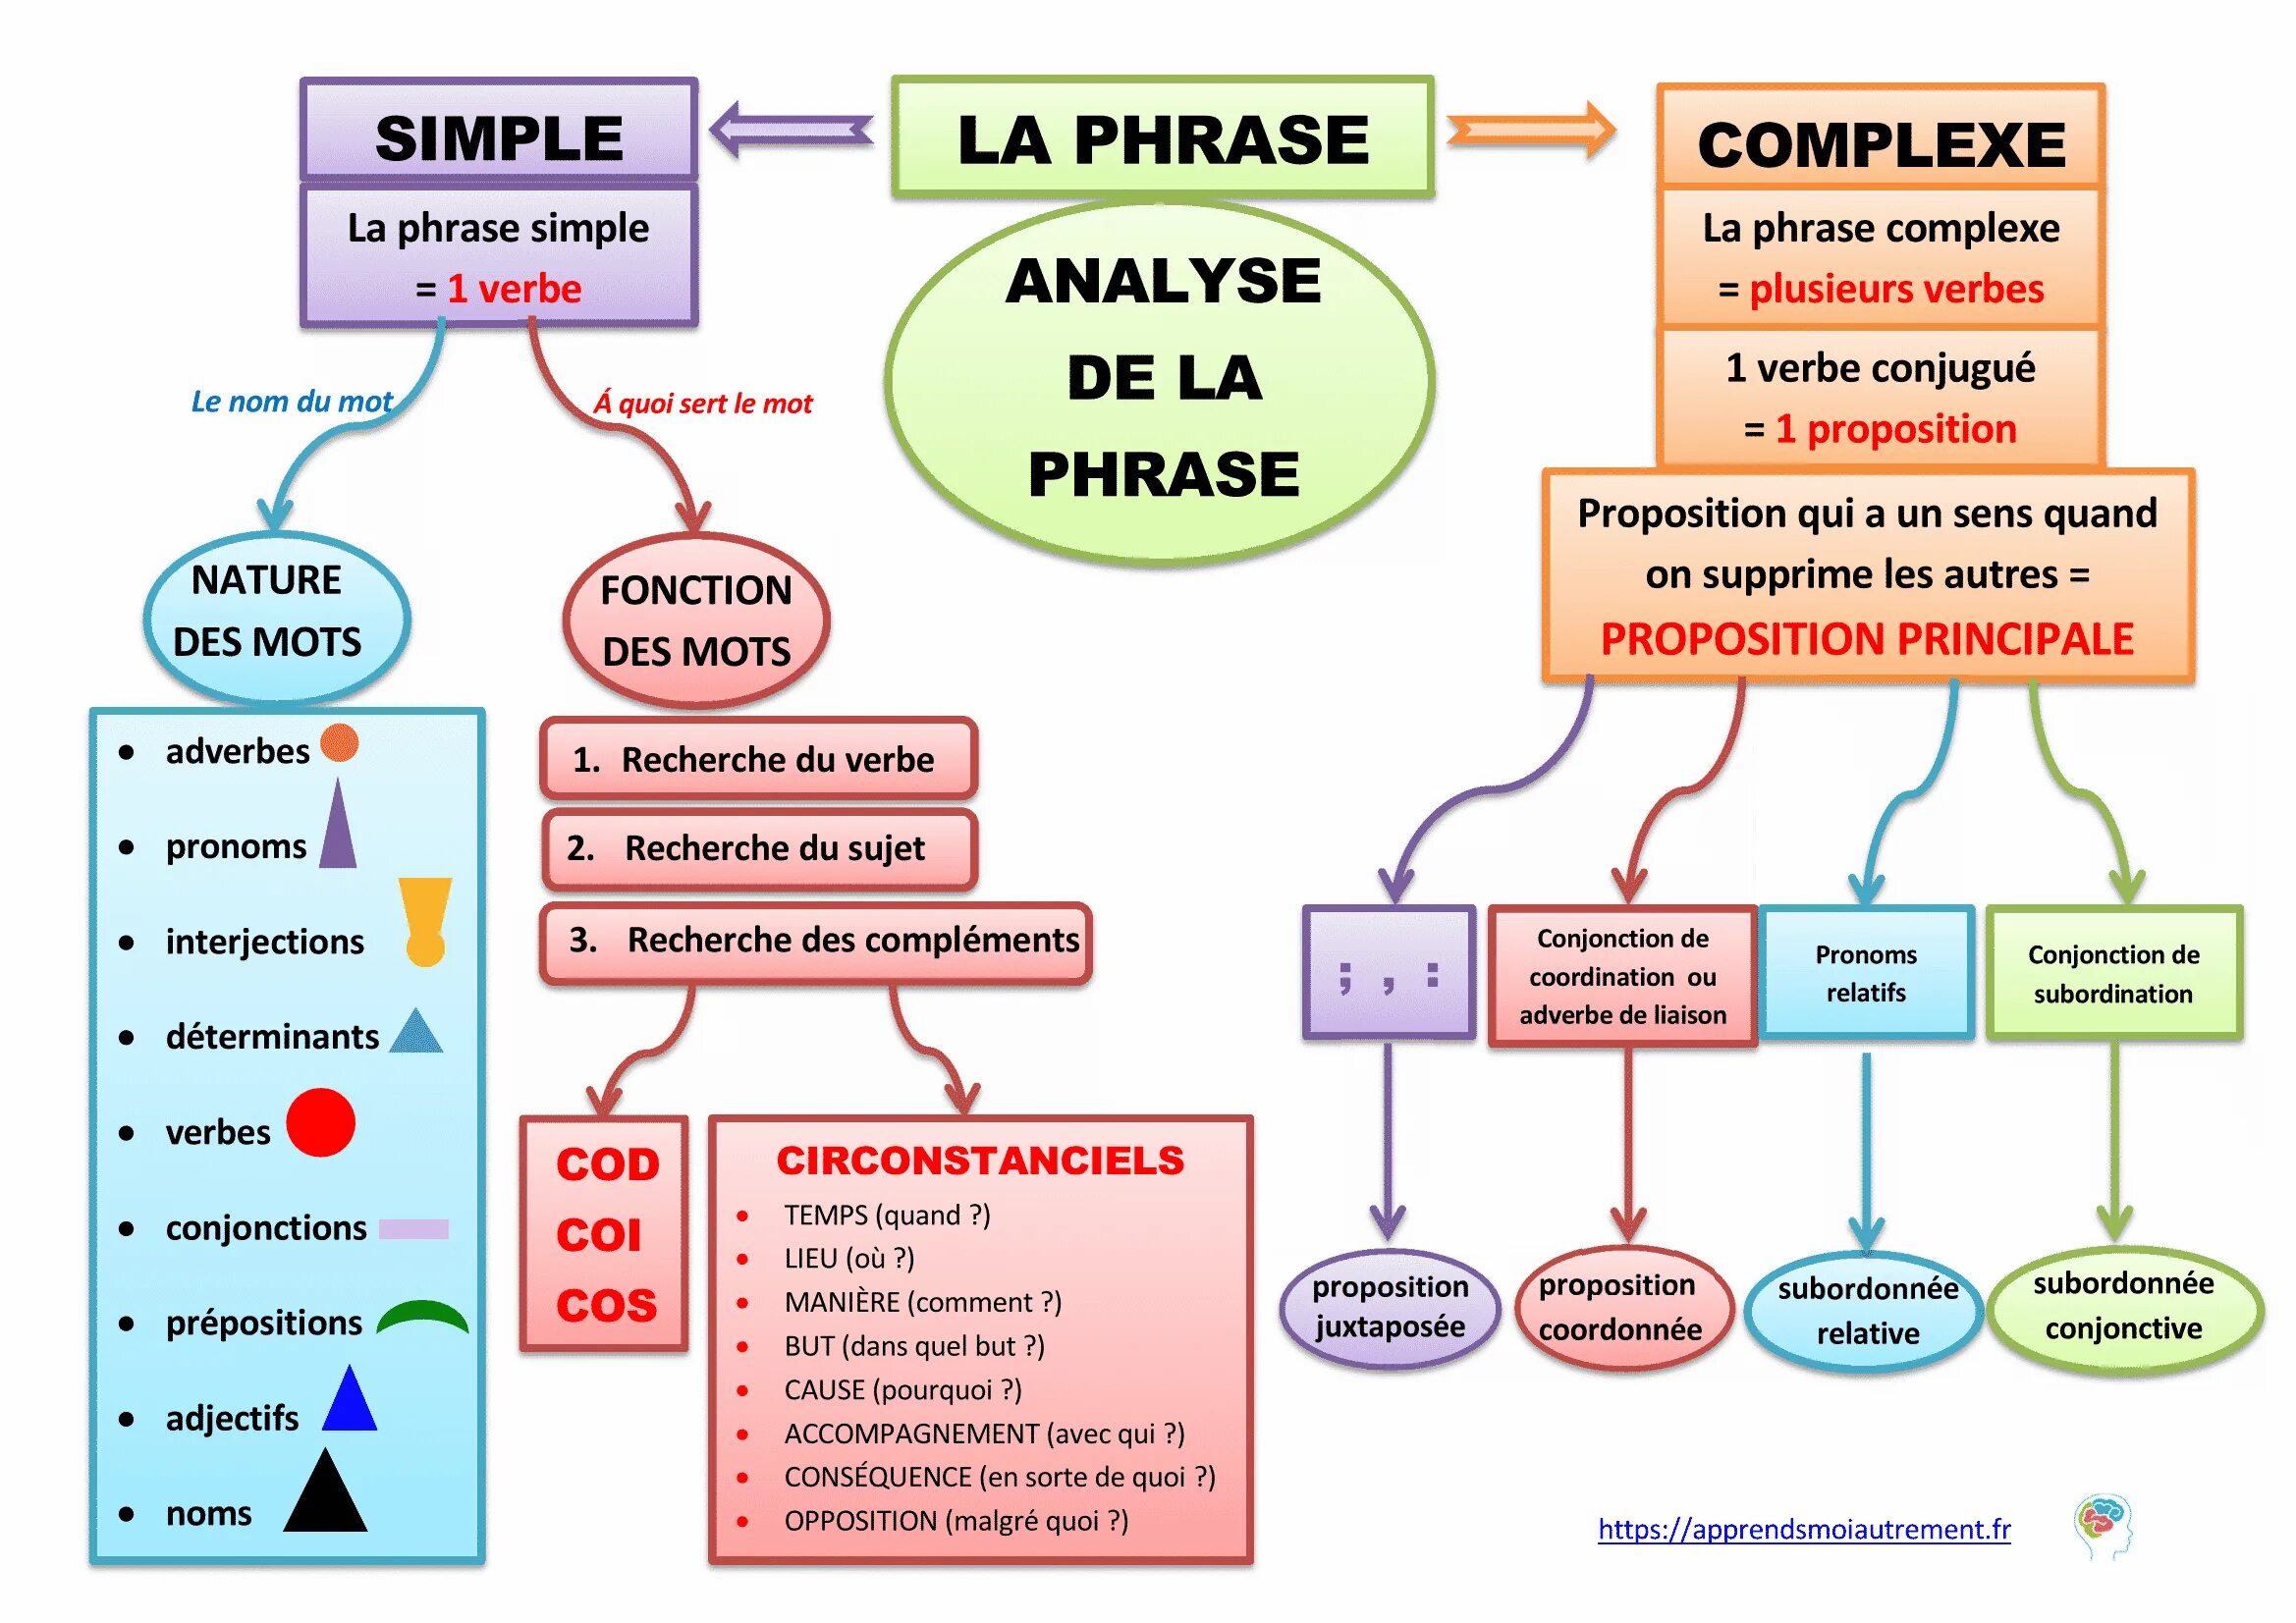 Phrase complexe во французском. Simple phrase. Phrasal simple. Phrase structure Analysis. Page phrase